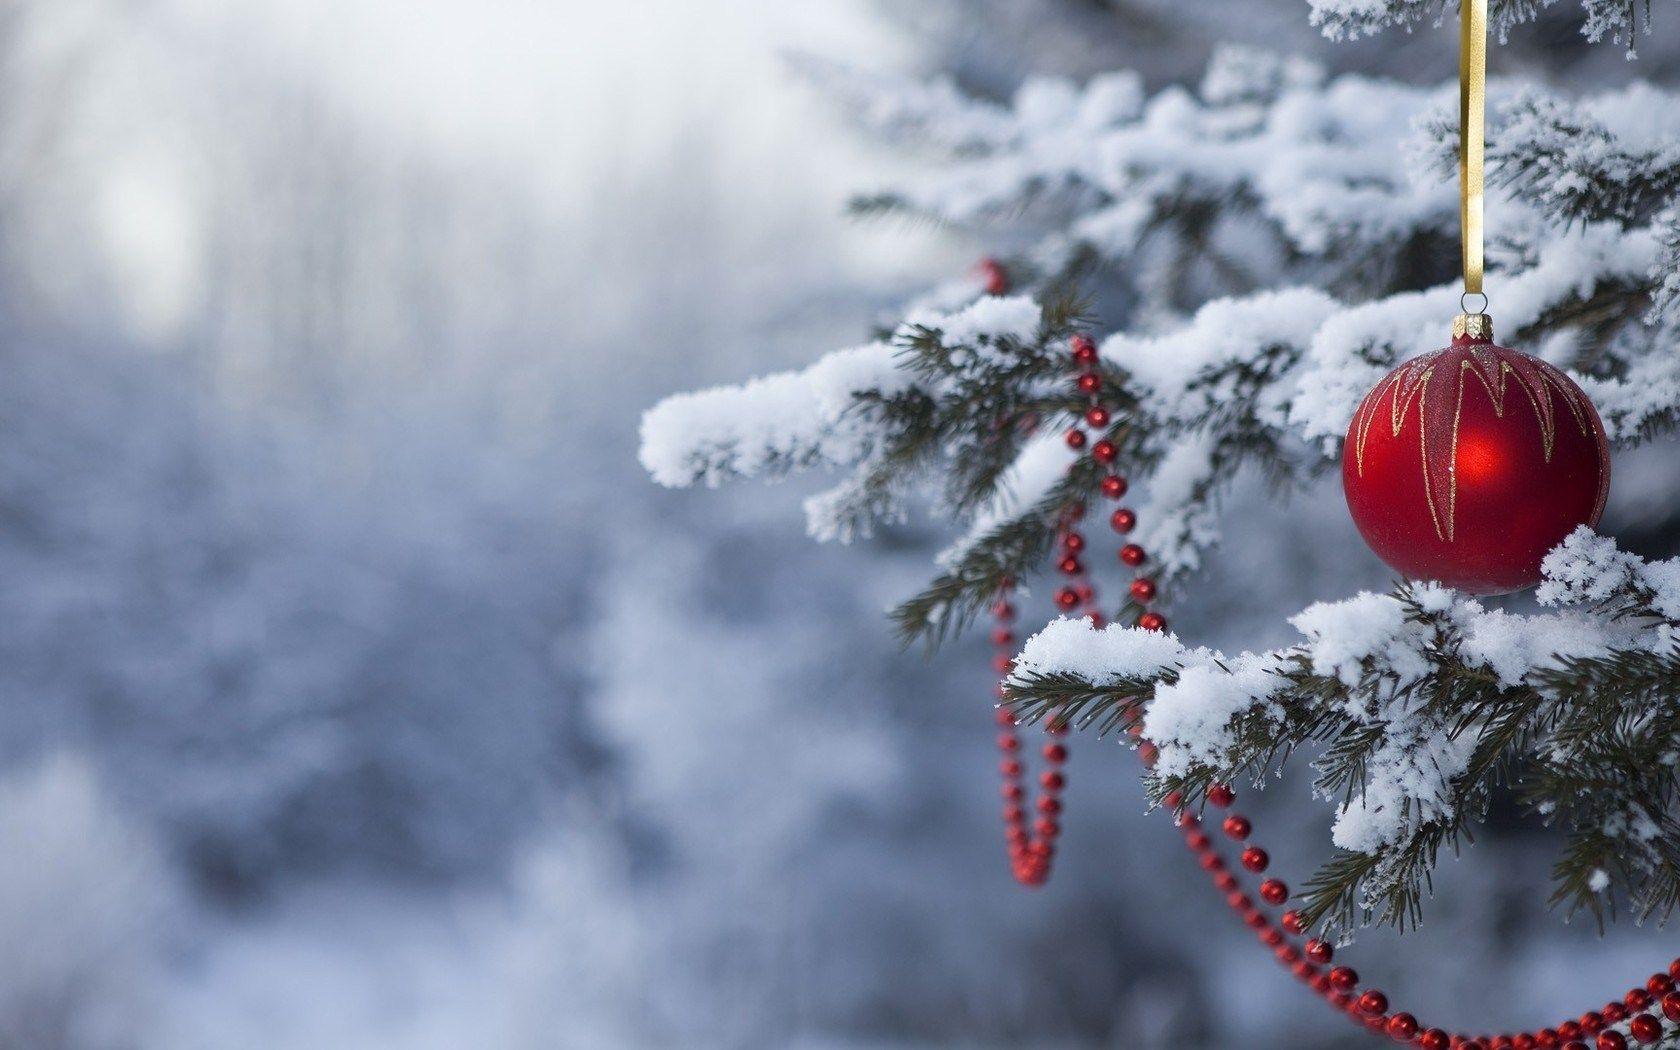 Giáng sinh và tuyết rơi, liệu có gì tuyệt vời hơn? Hãy chiêm ngưỡng bức hình nền desktop Giáng sinh đầy tuyết và cho bản thân một không gian ấm áp và đầy cảm xúc trong mùa lễ hội này.